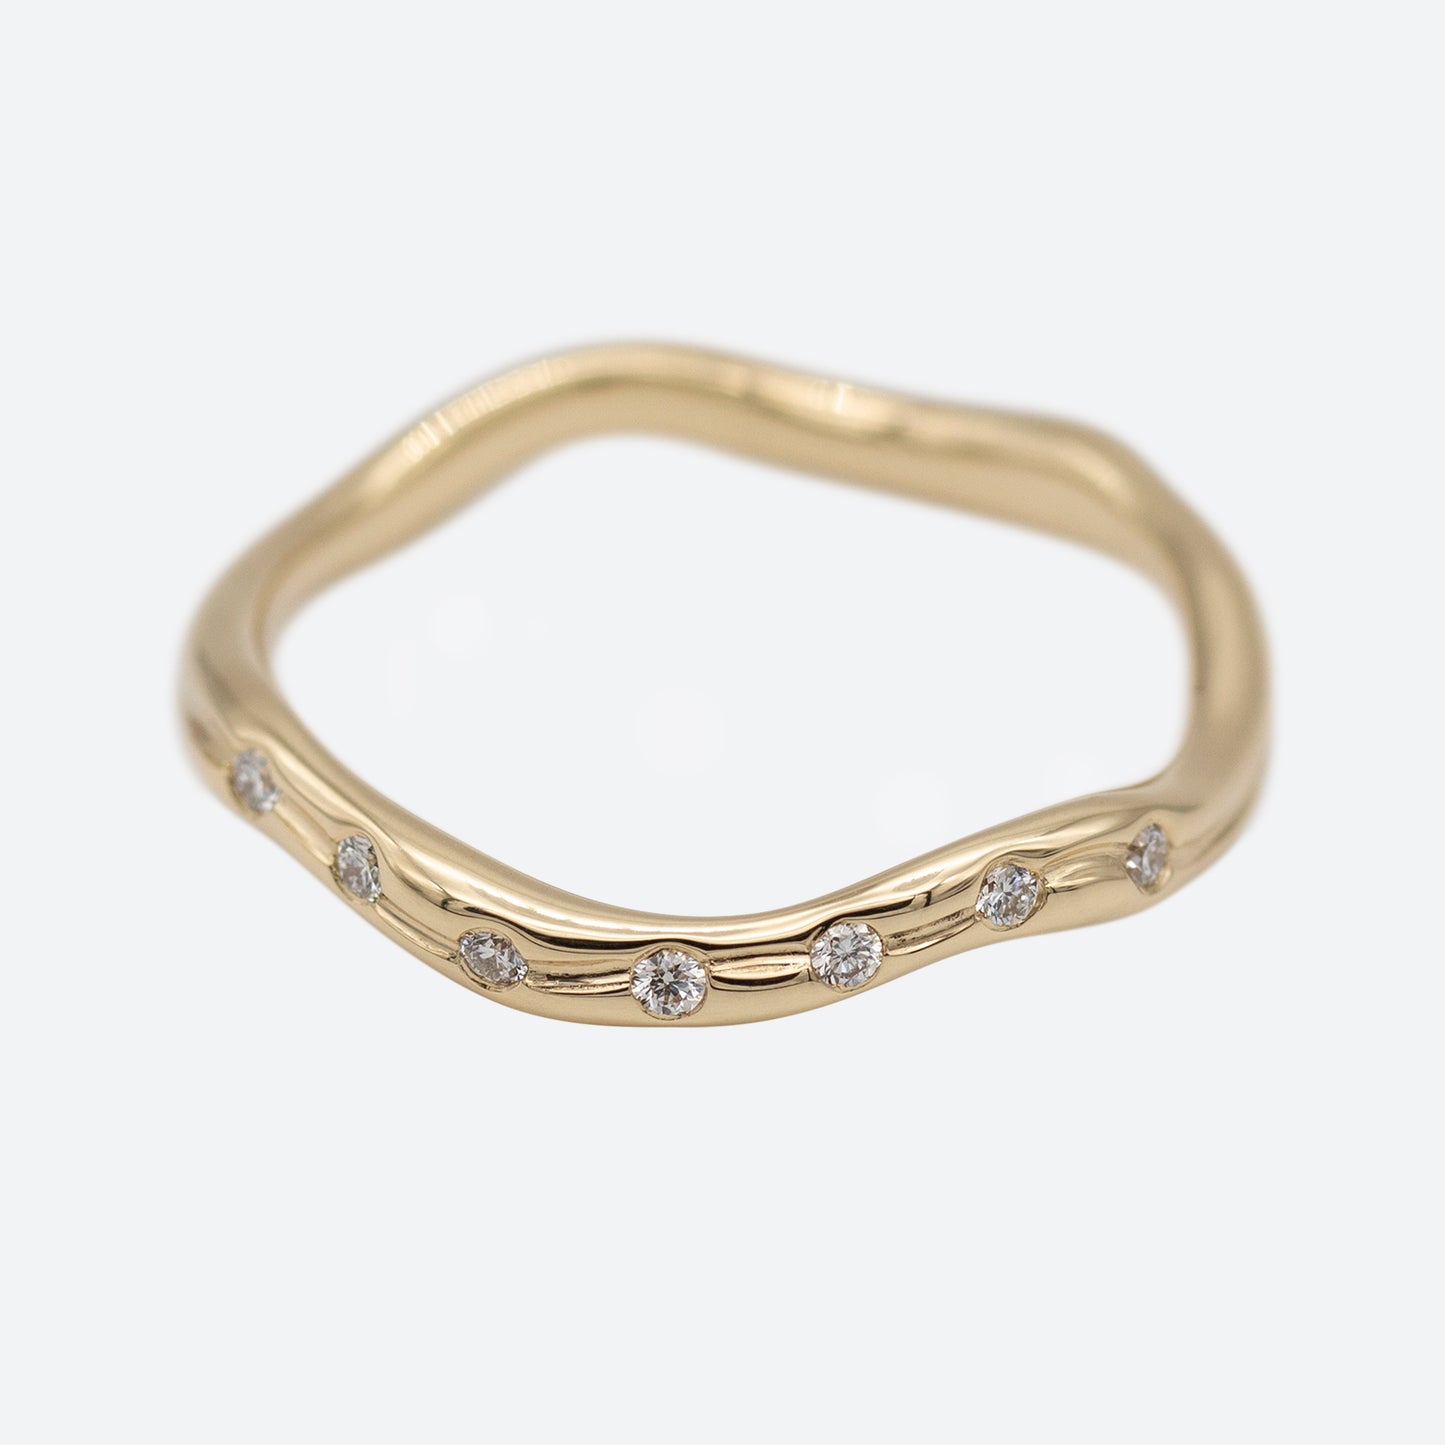 En ring i guld set i perspektiv med syv diamanter på hvid baggrund. Ringen er formgivet organisk og bølger elegant.